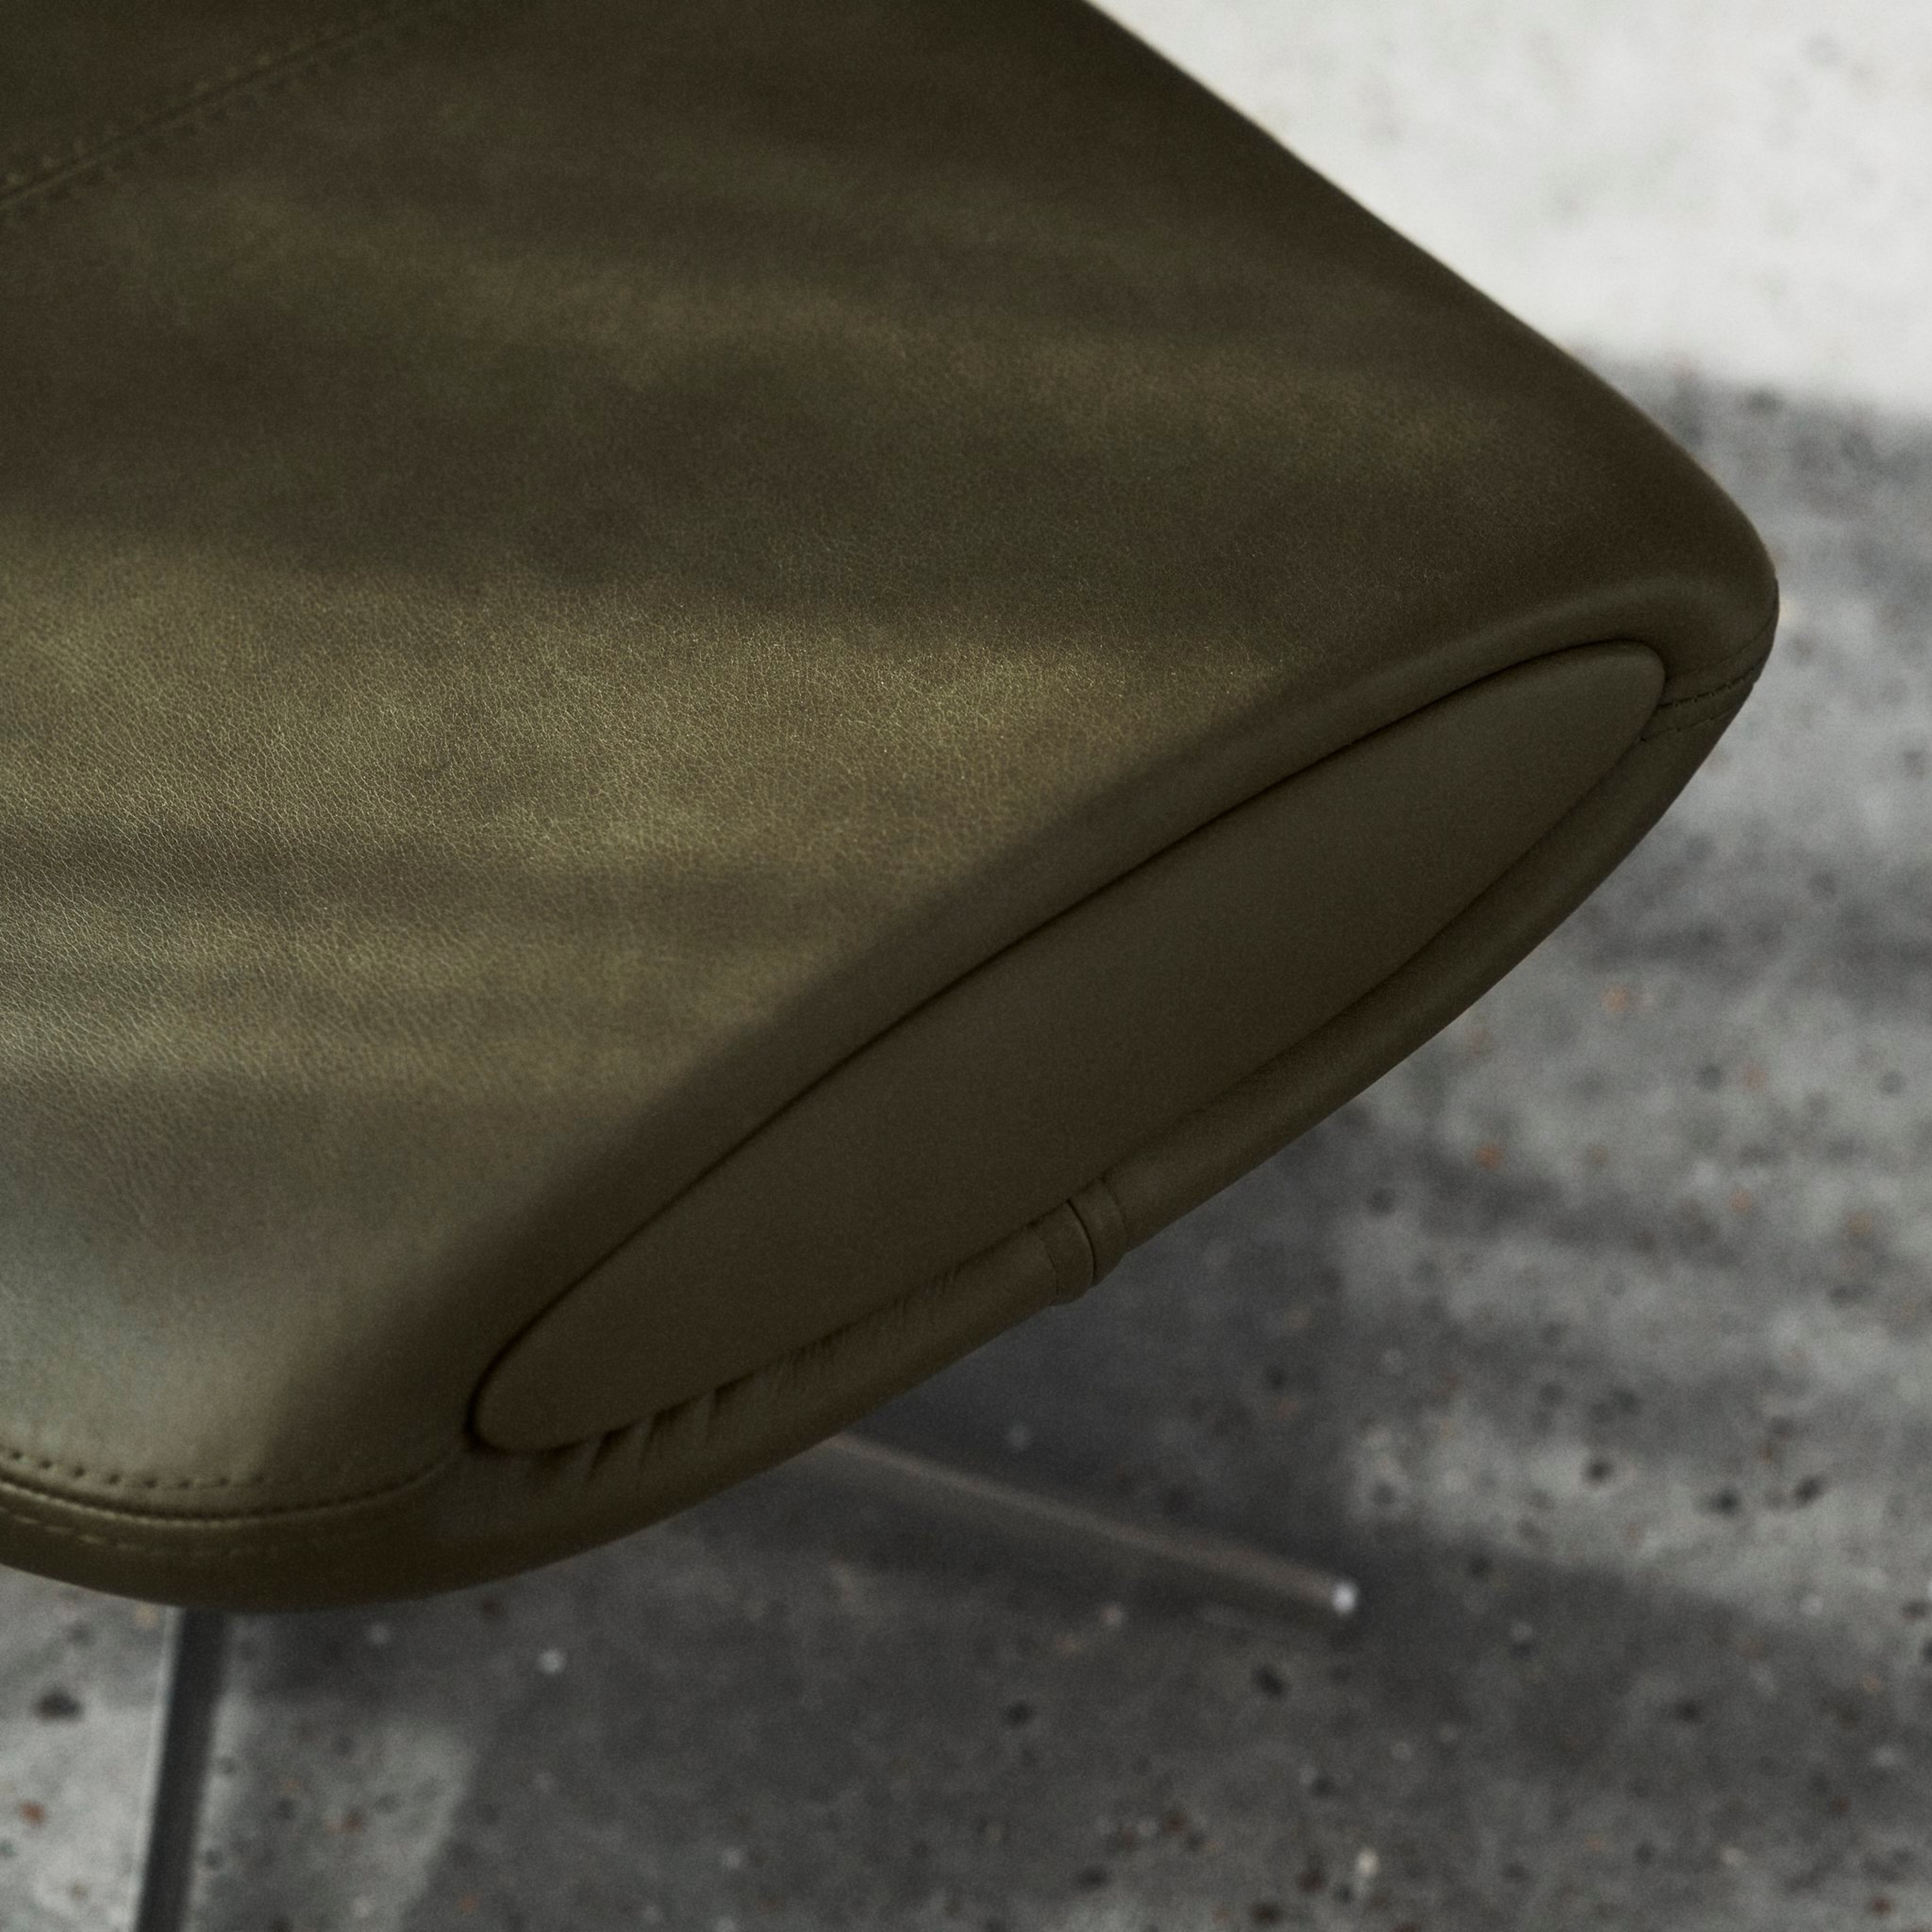 Nahaufnahme der Kante eines olivgrünen Stuhls mit Ziernähten auf einem Betonboden.